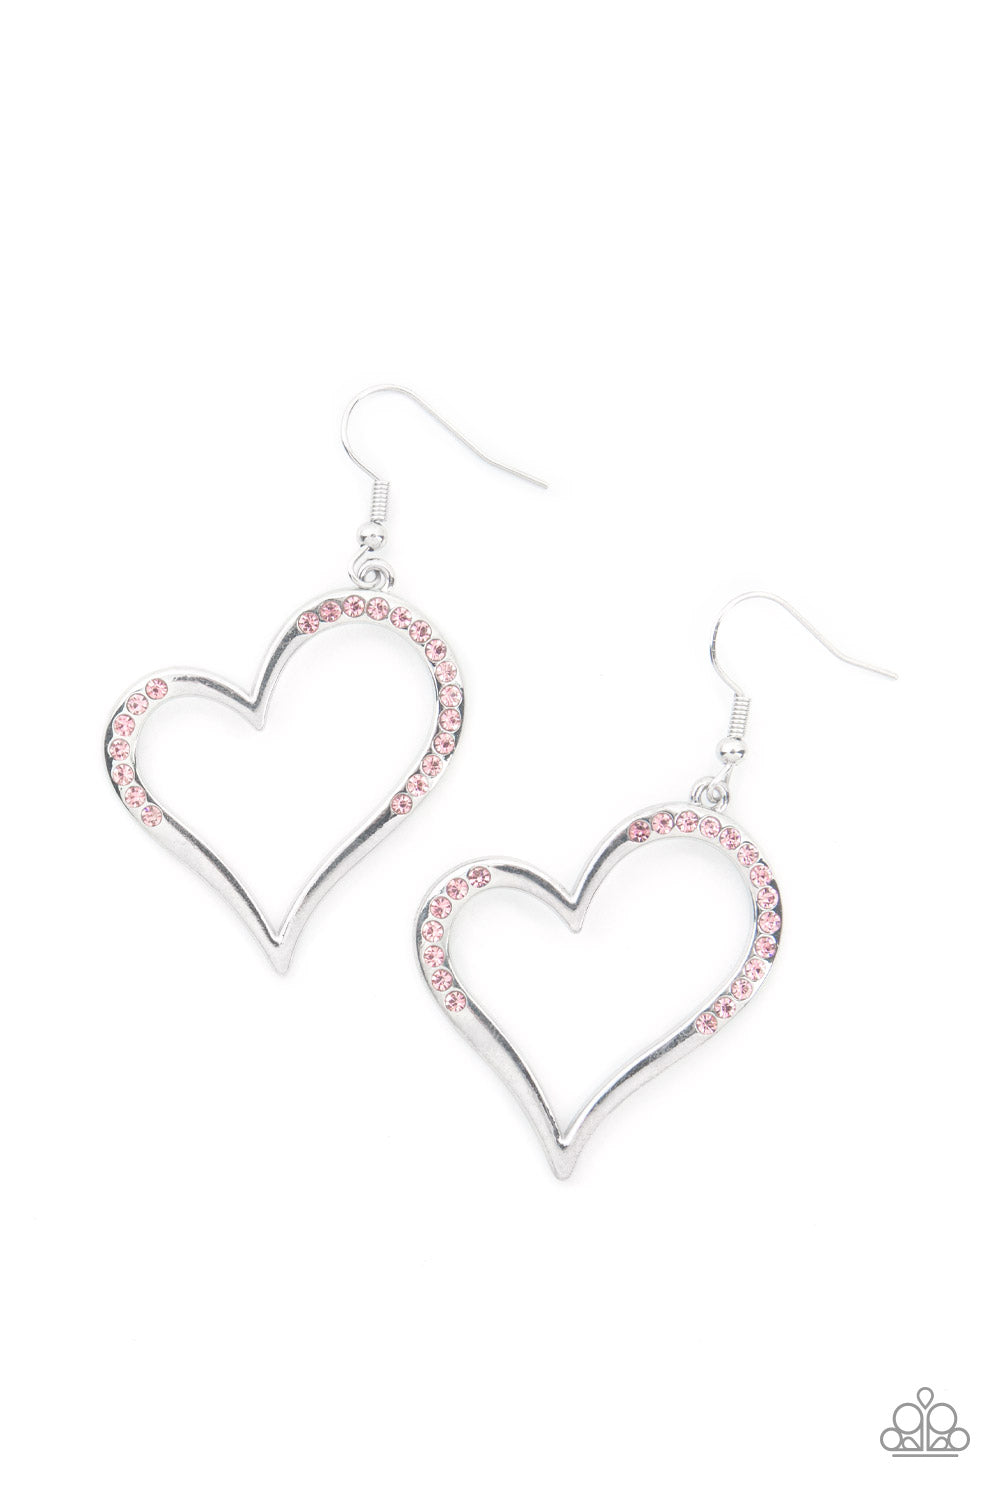 Tenderhearted Twinkle - Paparazzi - Pink Rhinestone Silver Heart Earrings